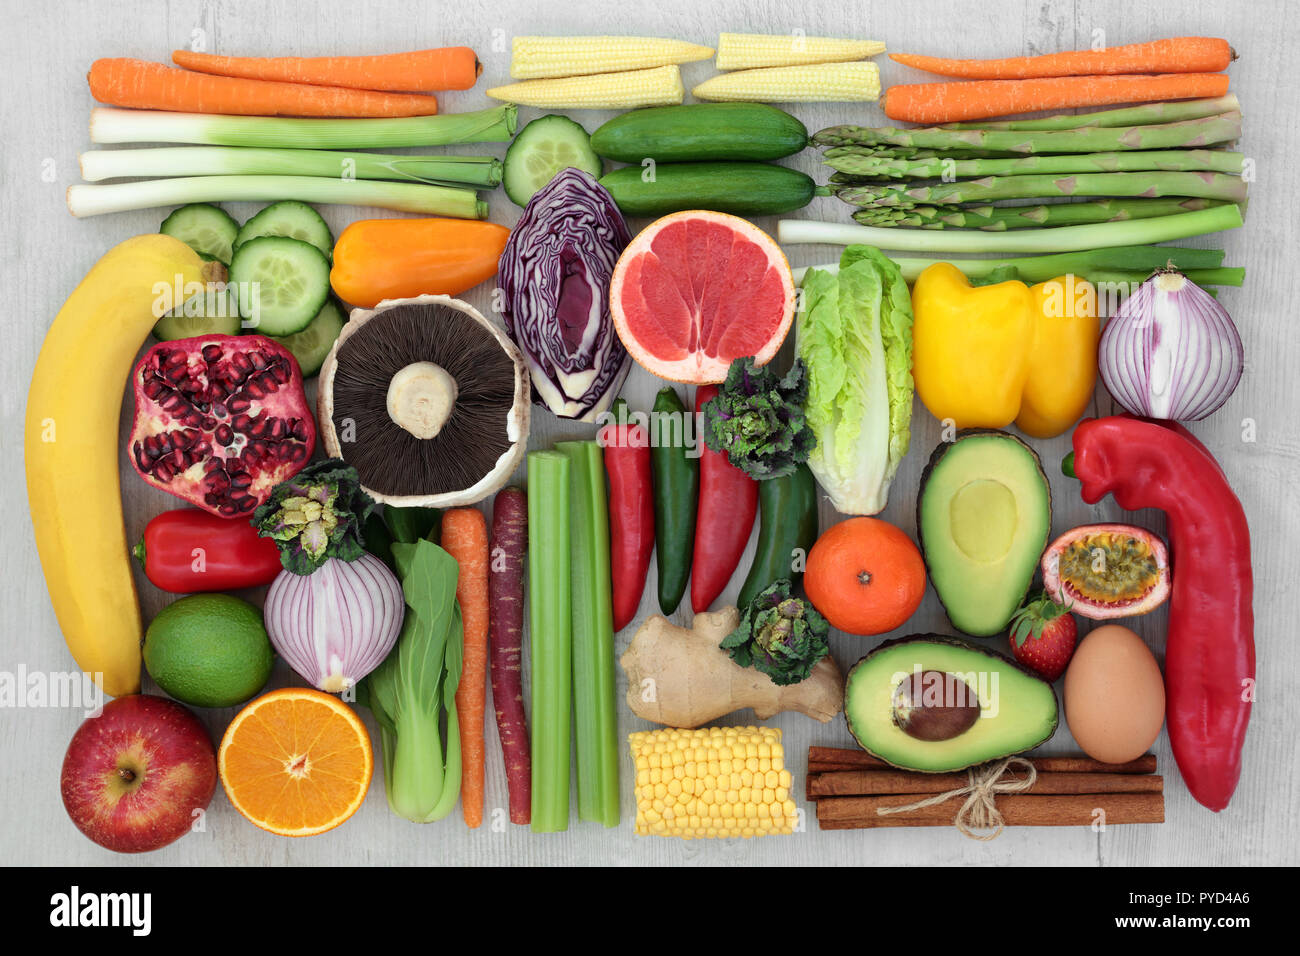 Gesunde Ernährung Konzept zum sauberen Essen mit frischem Obst, Gemüse und Gewürze. Lebensmittel, die einen hohen Gehalt an Antioxidantien, Anthocyane, Vitamine und Ballaststoffe. Stockfoto